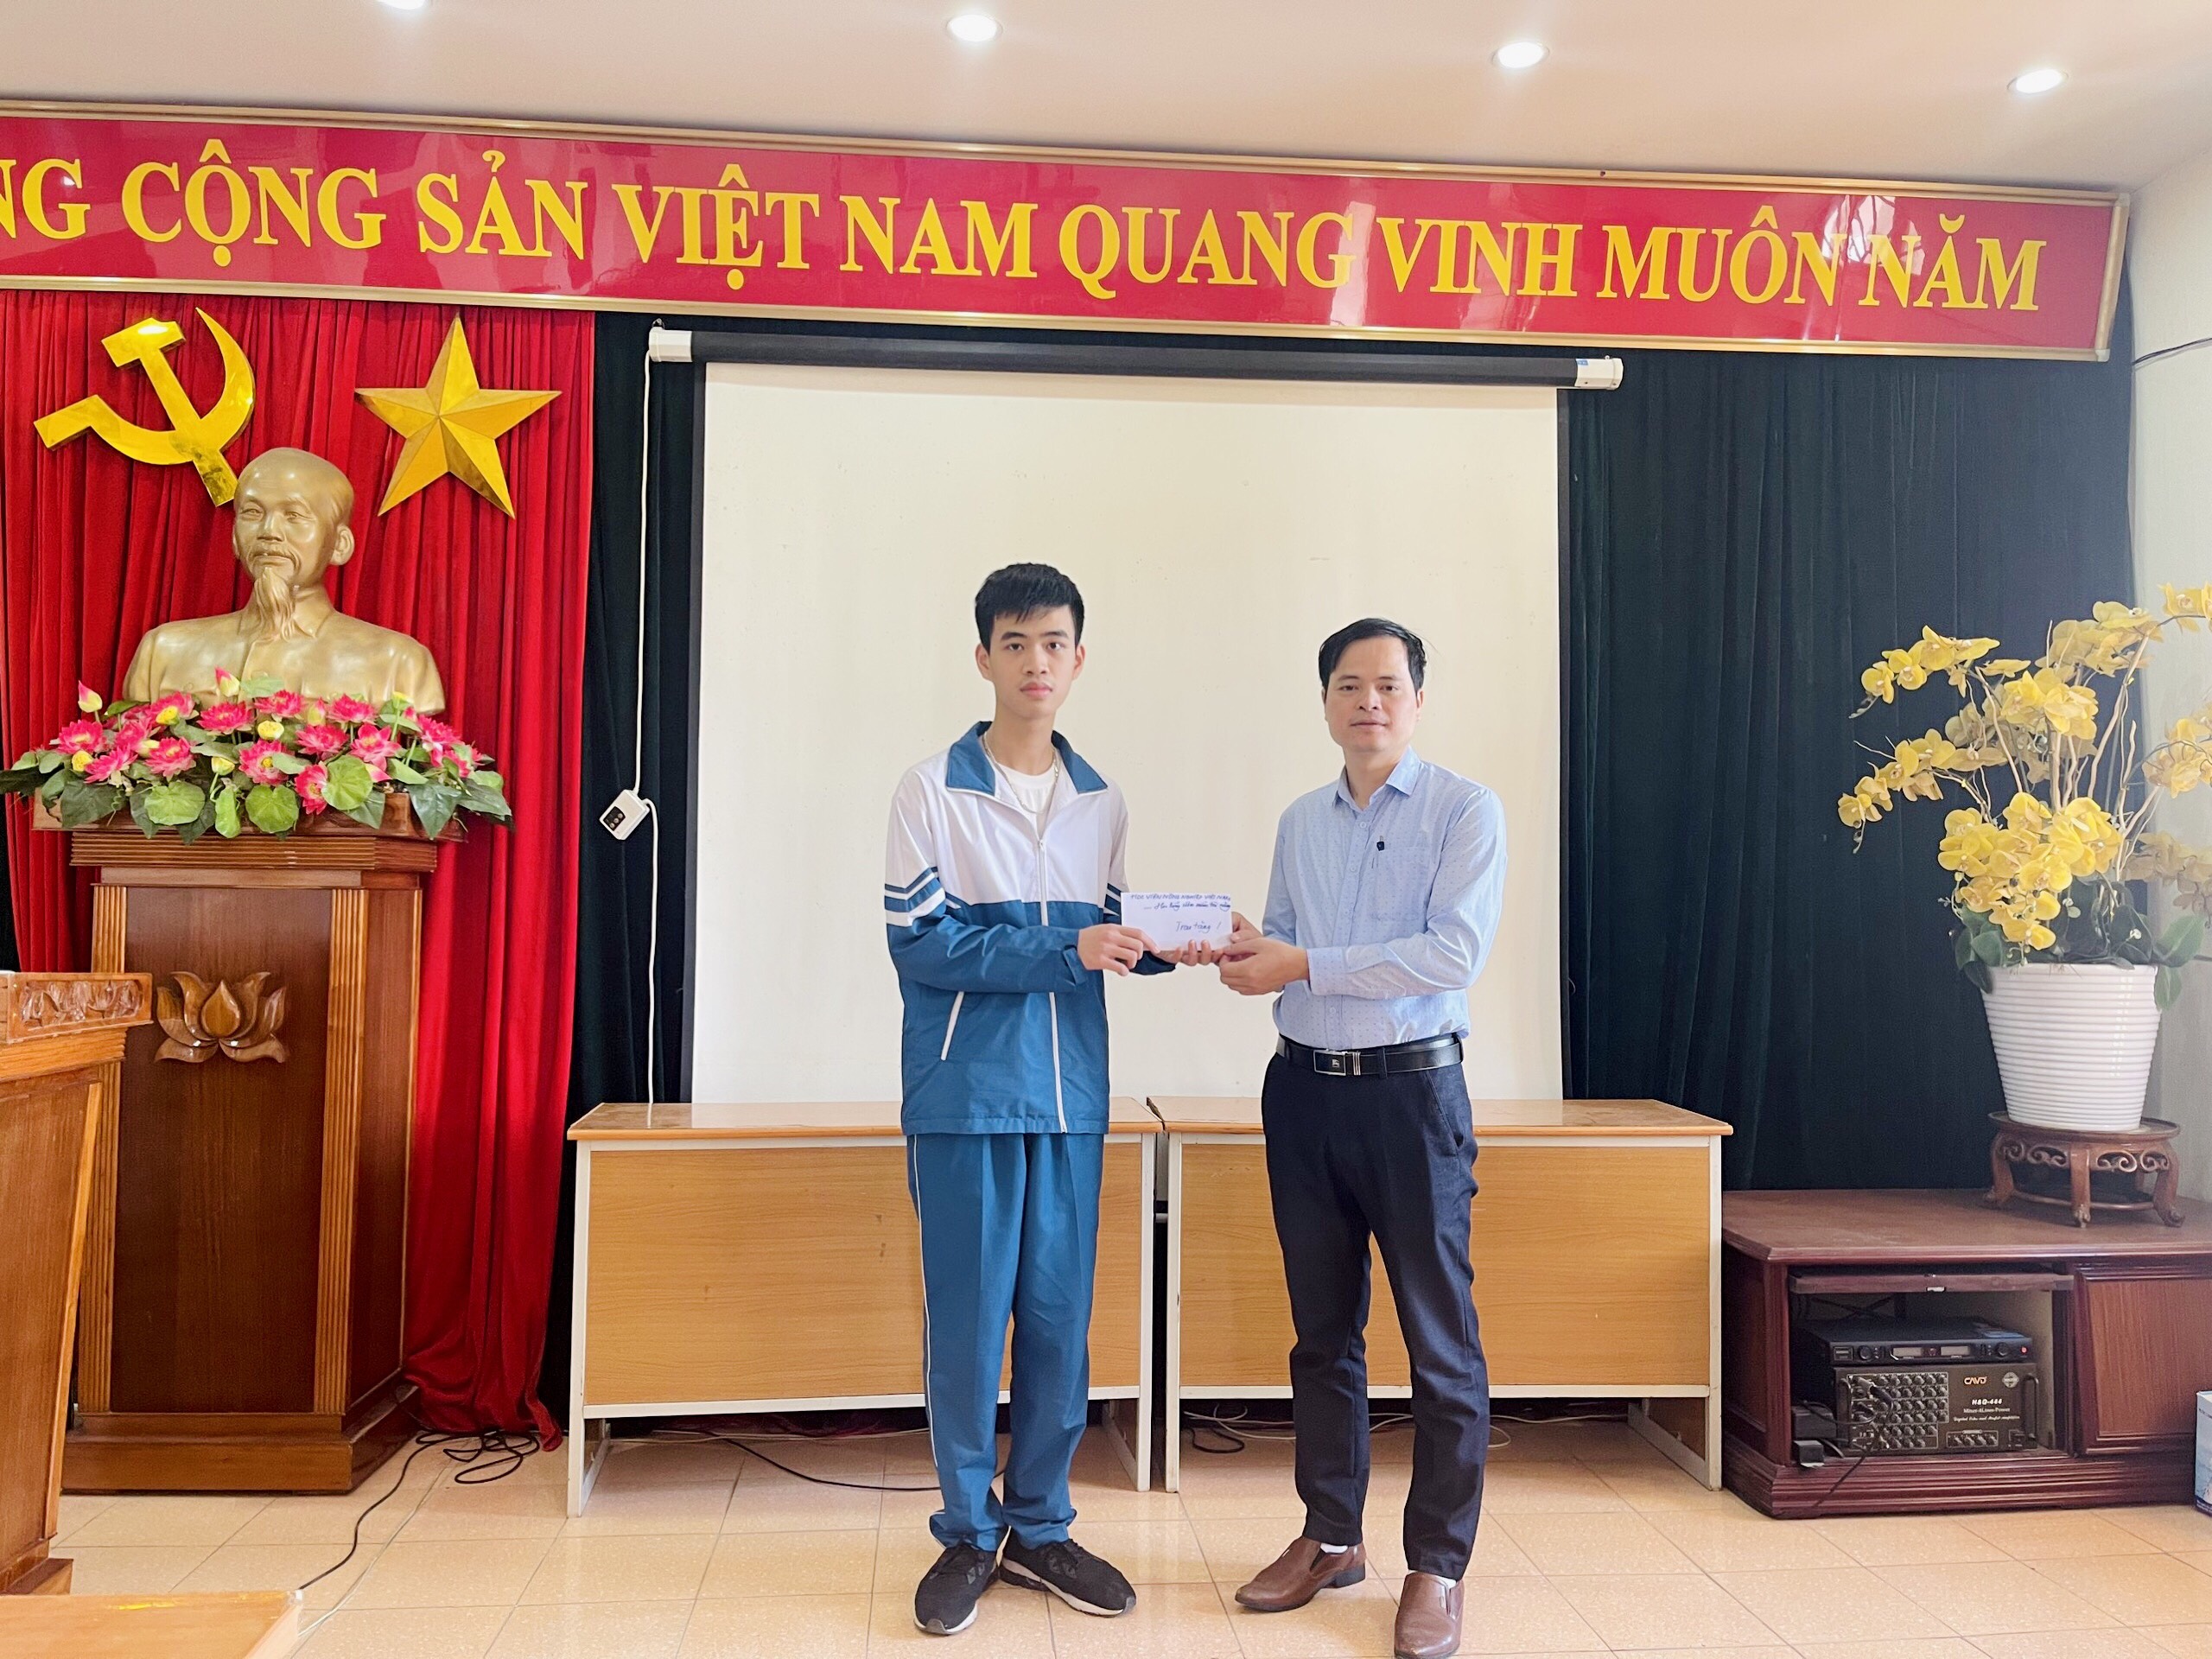 Bạn Vũ Đức Trung - 12 Lý xuất sắc nhận Học bổng Ươm mầm Tài năng của Học viện Nông nghiệp Việt Nam.